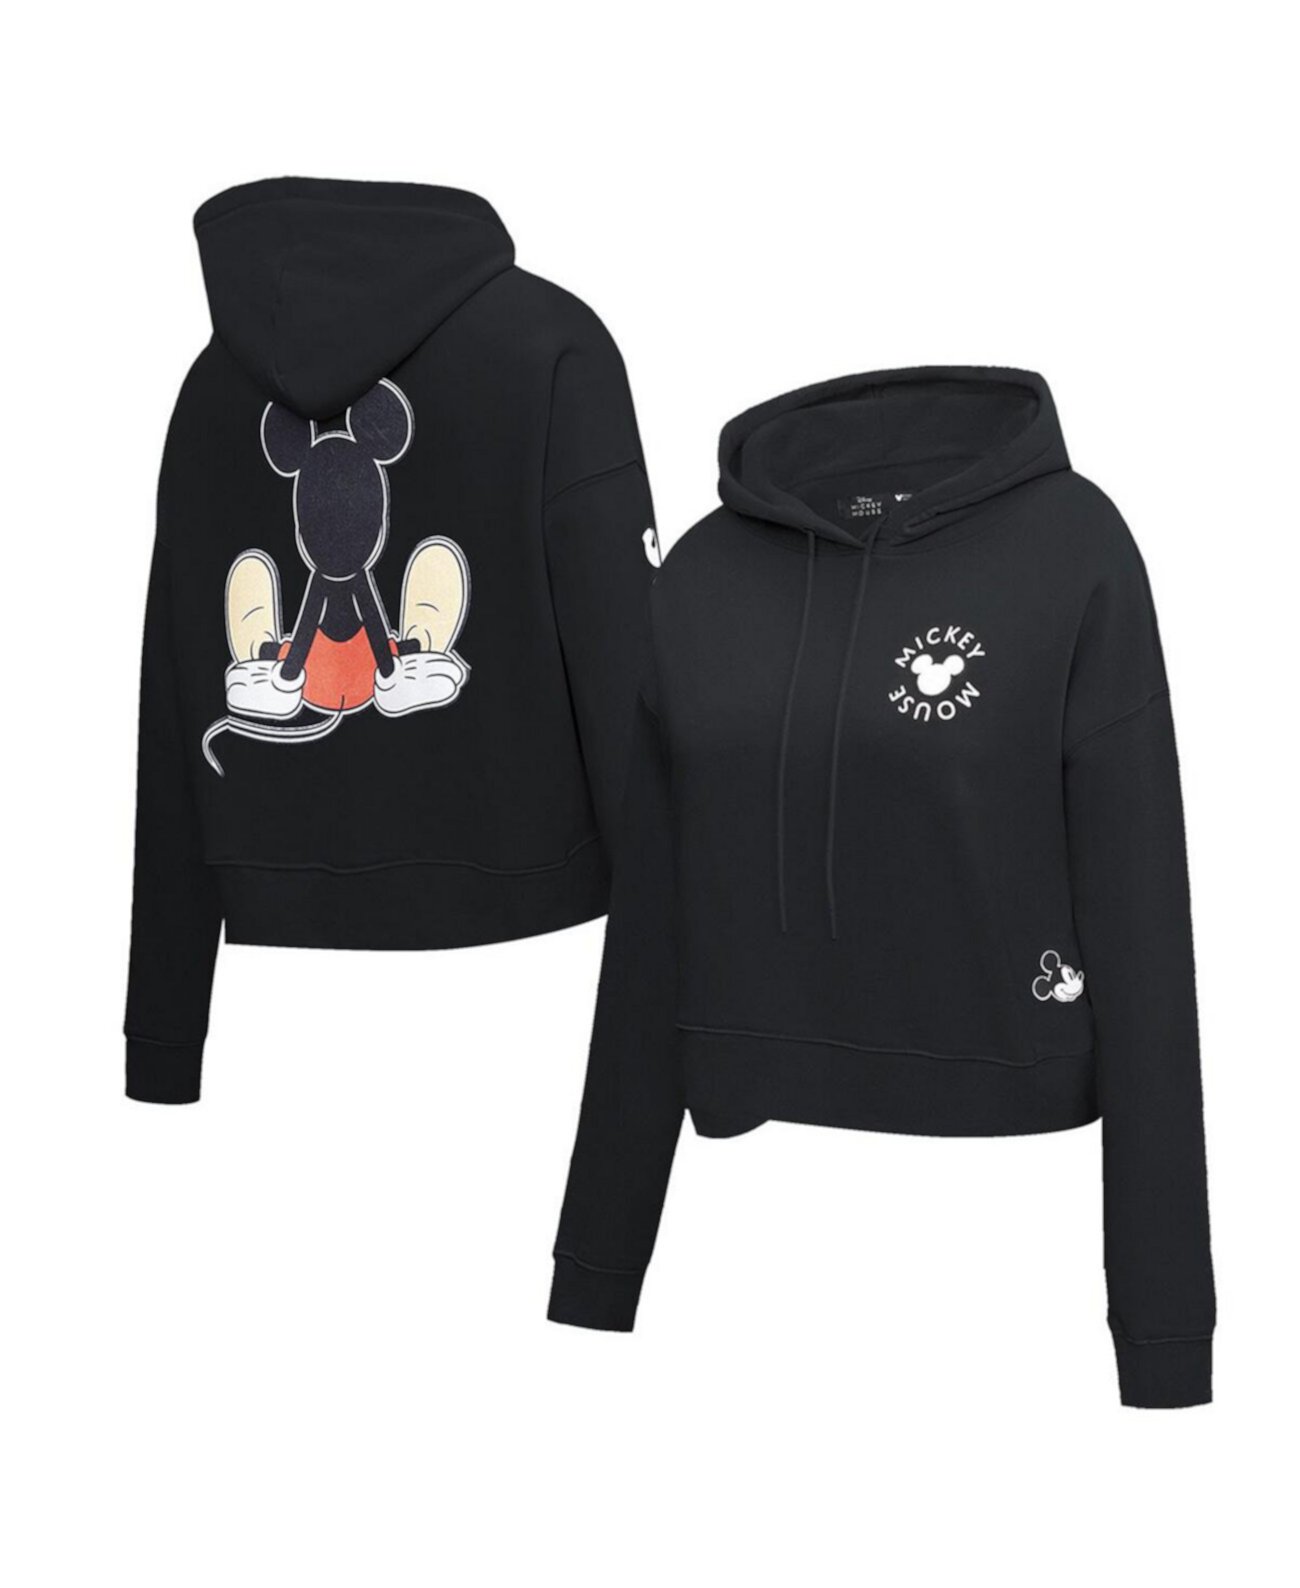 Женский укороченный пуловер с капюшоном черного цвета с Микки Маусом Happiness Freeze Max